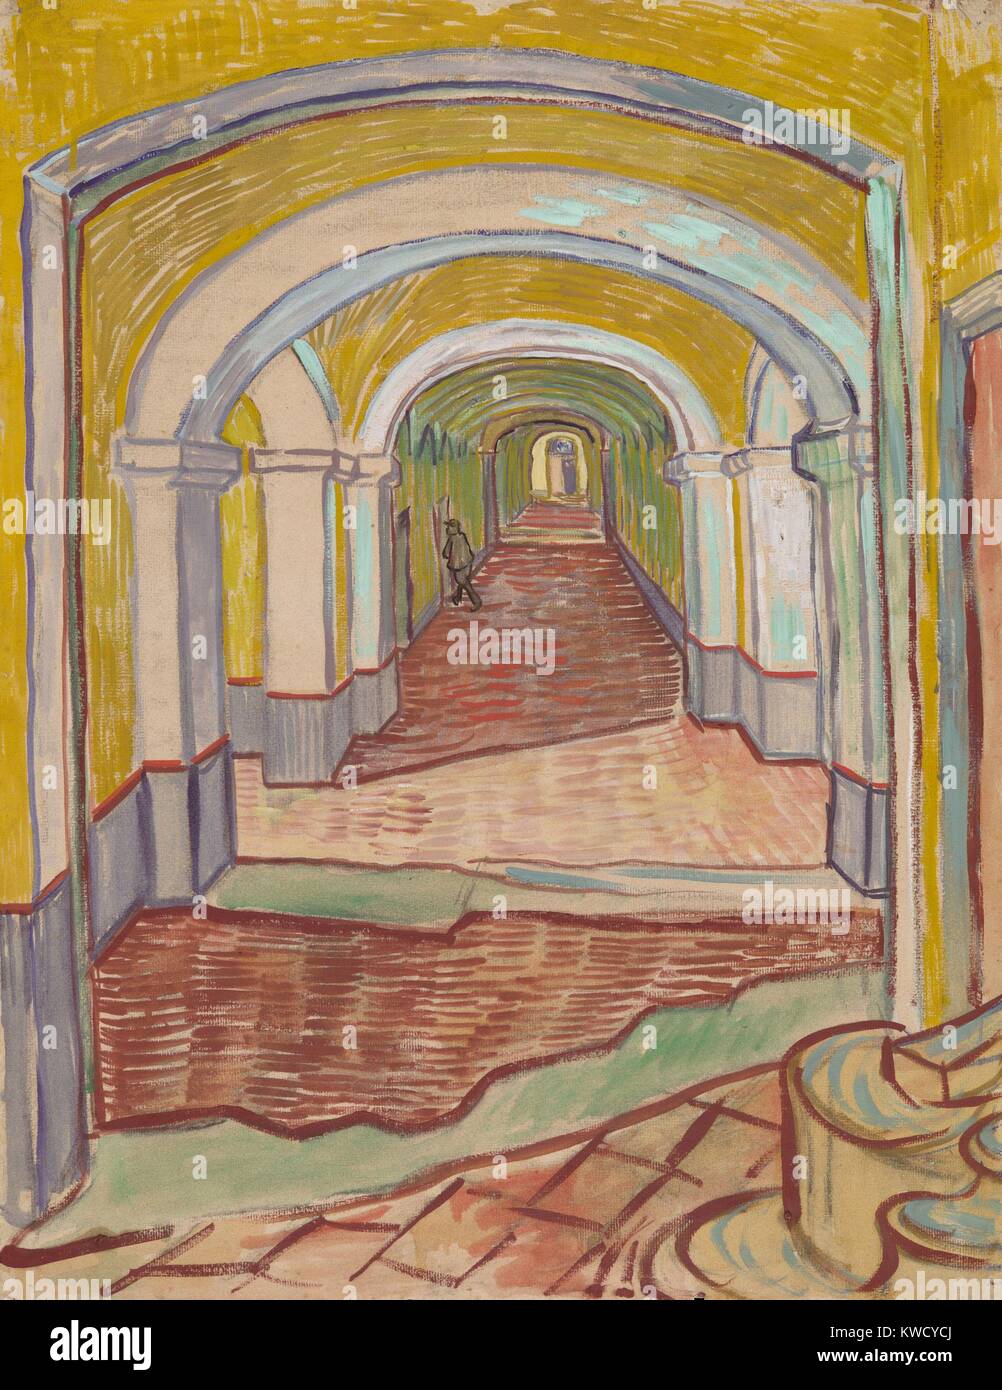 Corridoio all'asilo, di Vincent Van Gogh, 1889, olandese Post-Impressionist pittura. Questo mixed media lavoro di colore ad olio e gesso nero su carta rosa, utilizzato esagerato della prospettiva lineare di vernice espressamente il Saint-Remy asilo in Arles (BSLOC 2017 5 56) Foto Stock